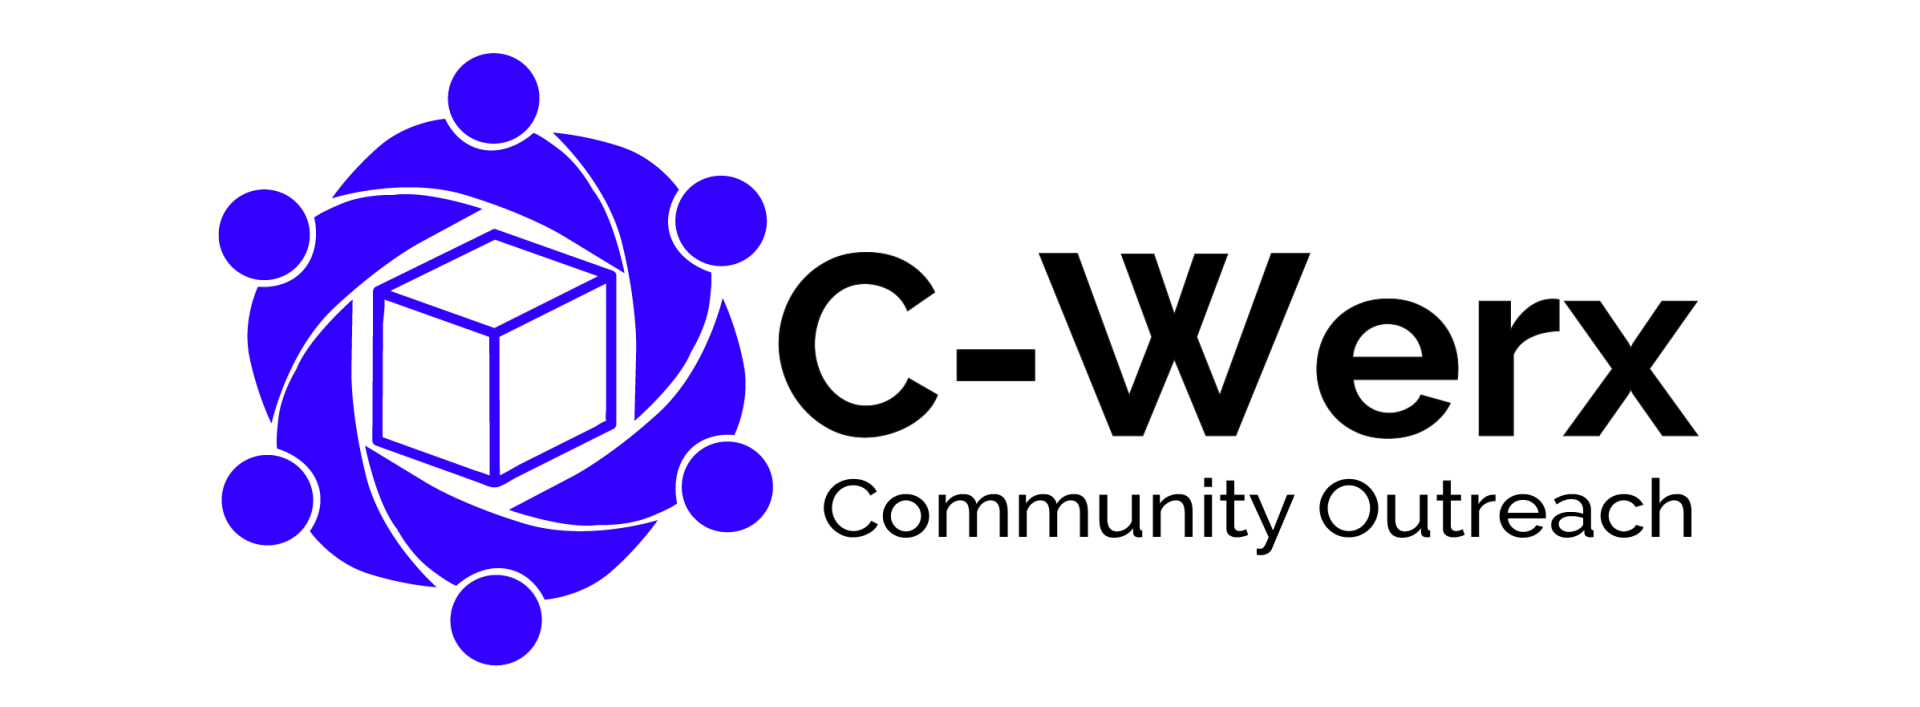 A blue logo for c-werx community outreach